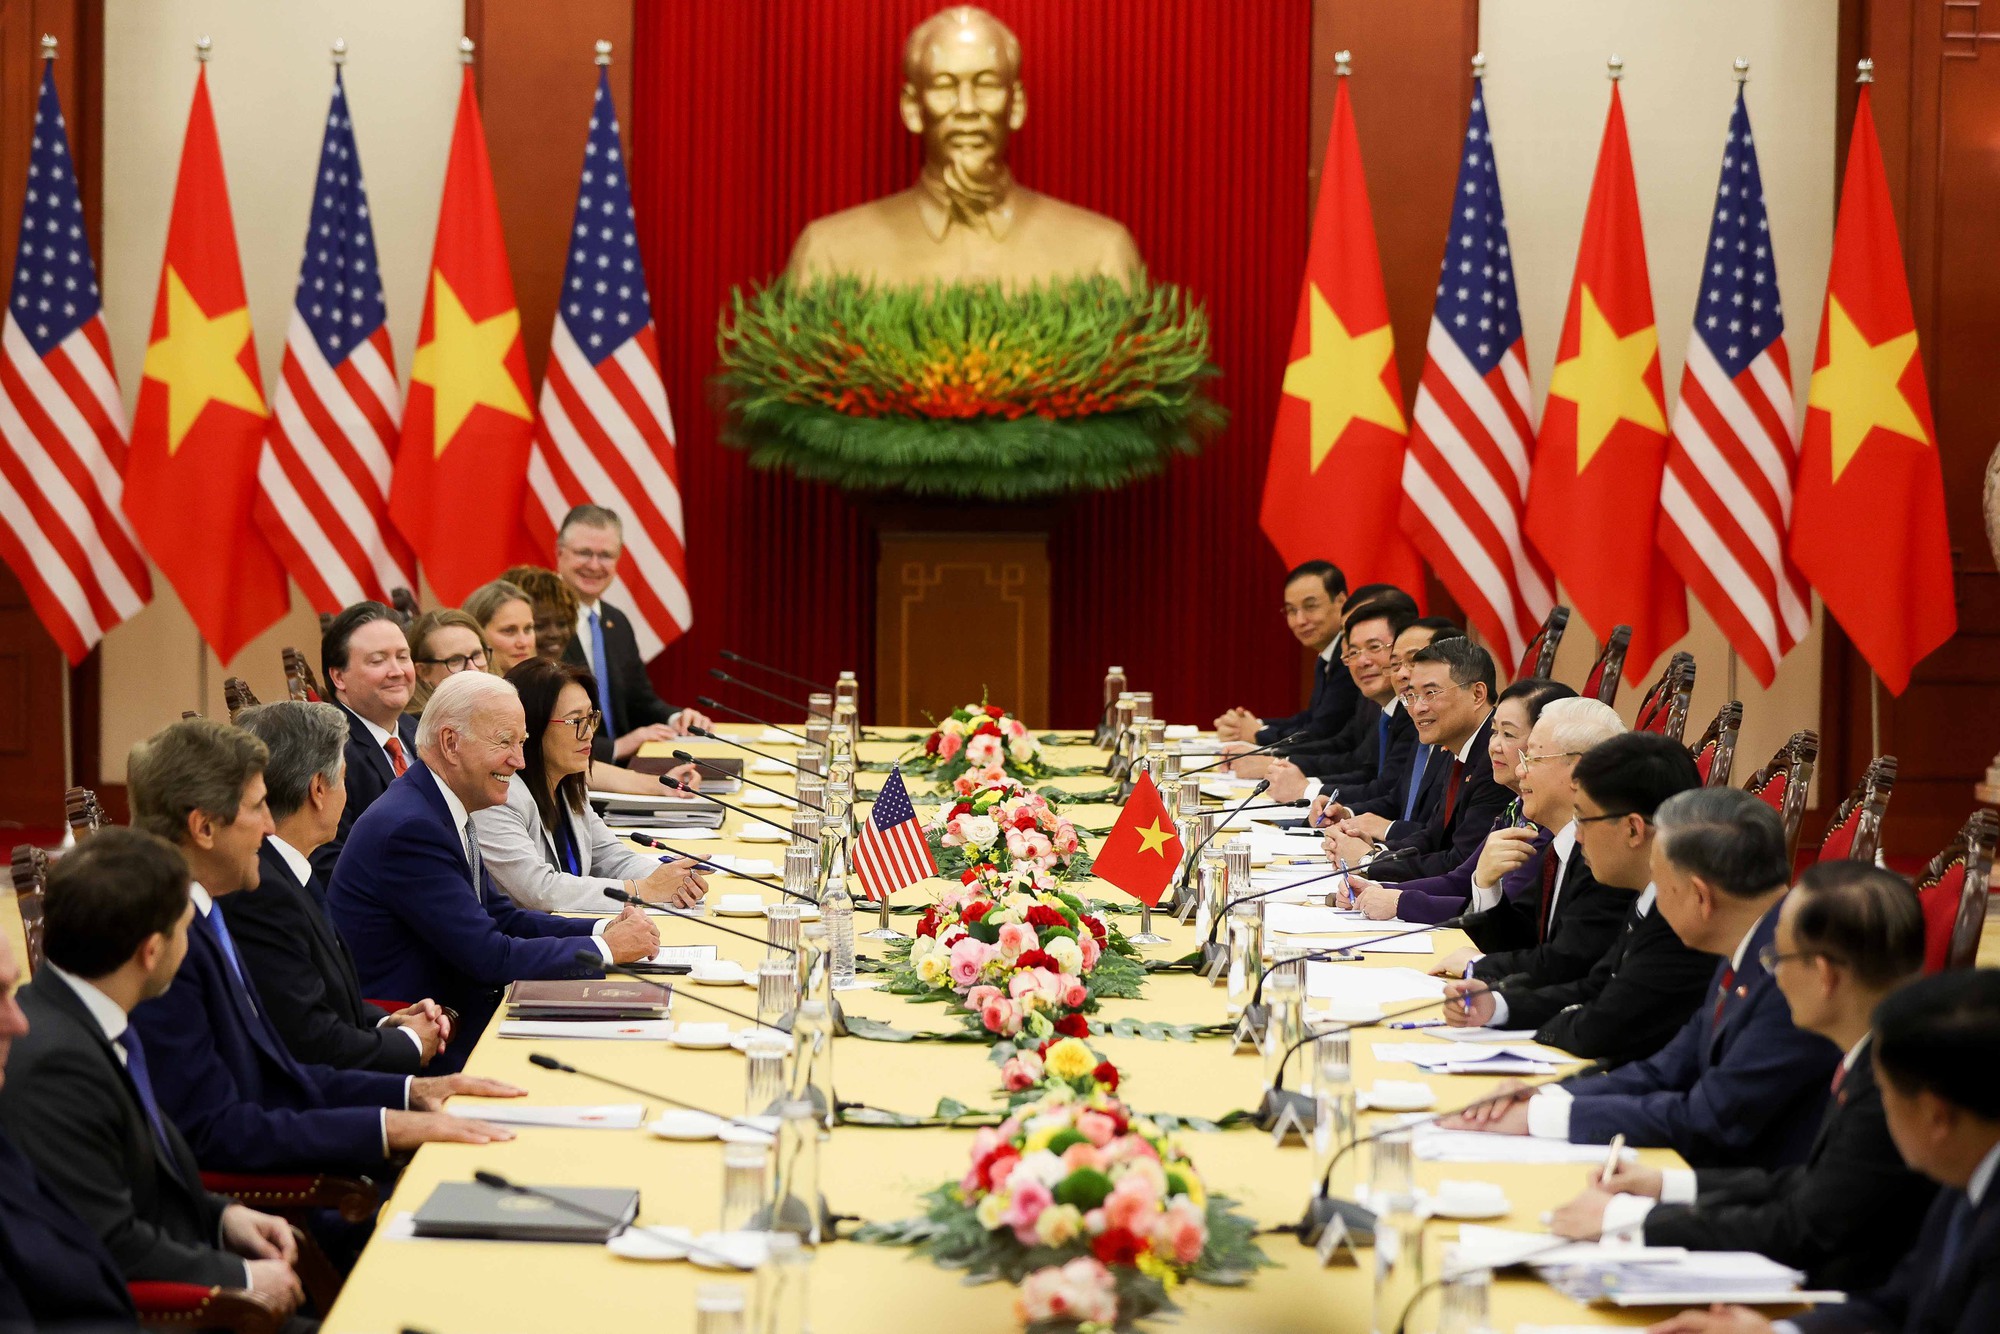 Tổng Bí thư Nguyễn Phú Trọng dẫn đầu Đoàn đại biểu cấp cao Việt Nam và Tổng thống Hoa Kỳ Joe Biden dẫn đầu Đoàn đại biểu cấp cao Hoa Kỳ tiến hành hội đàm, tại Trụ sở Trung ương Đảng - Ảnh: VGP/Nhật Bắc